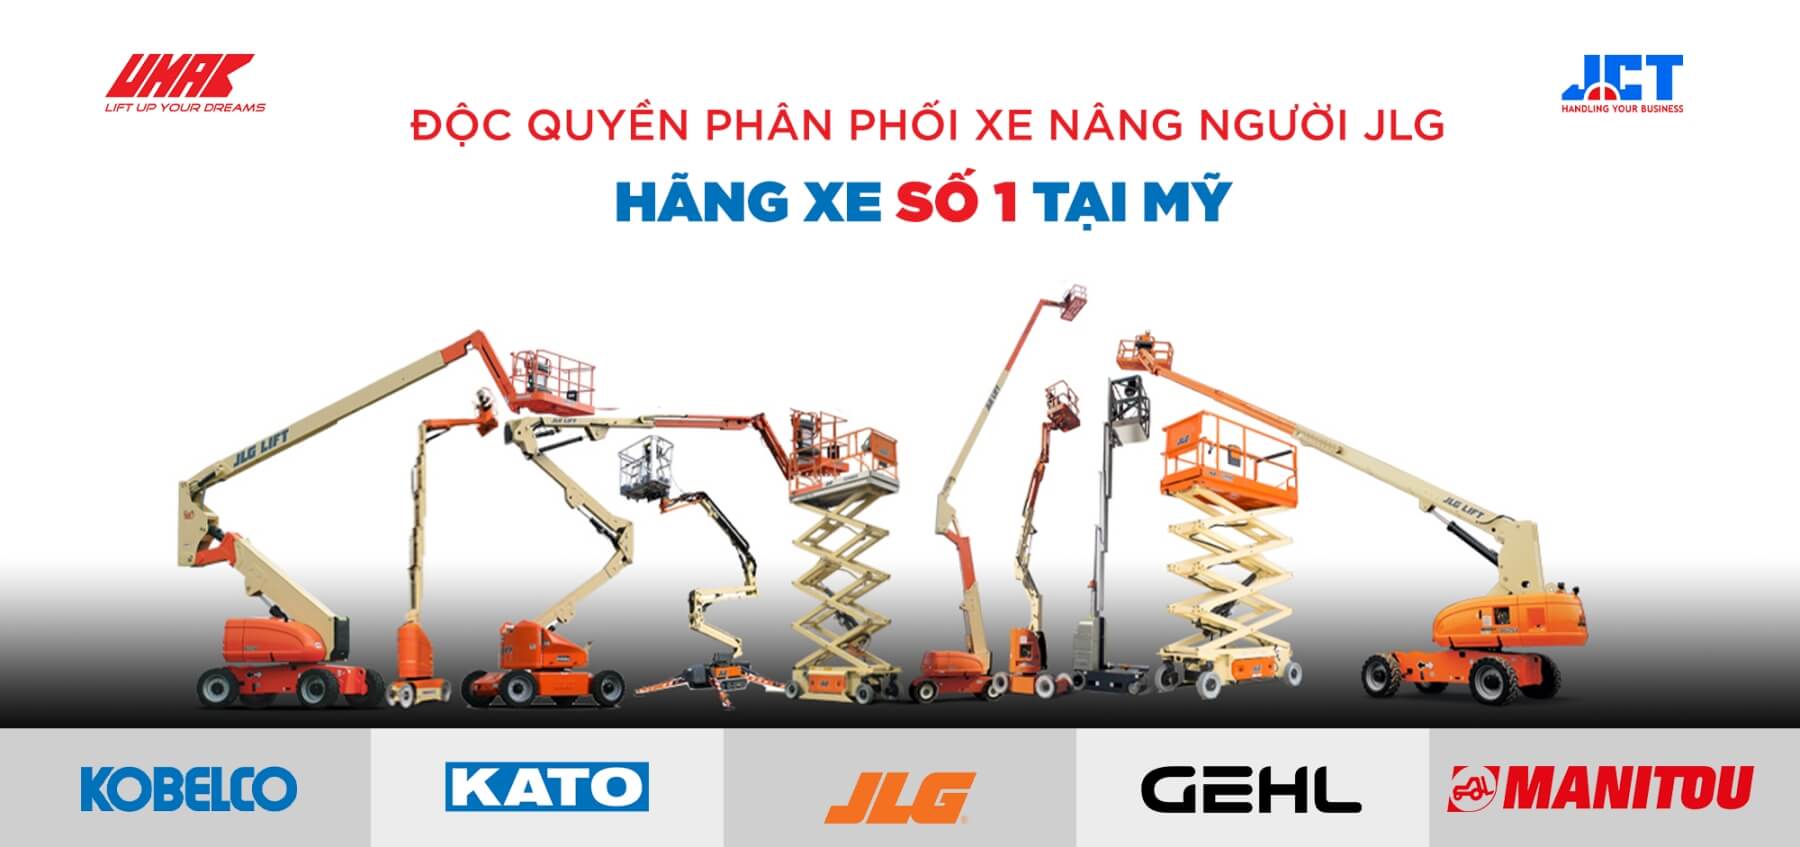 JLG Forklift - USA